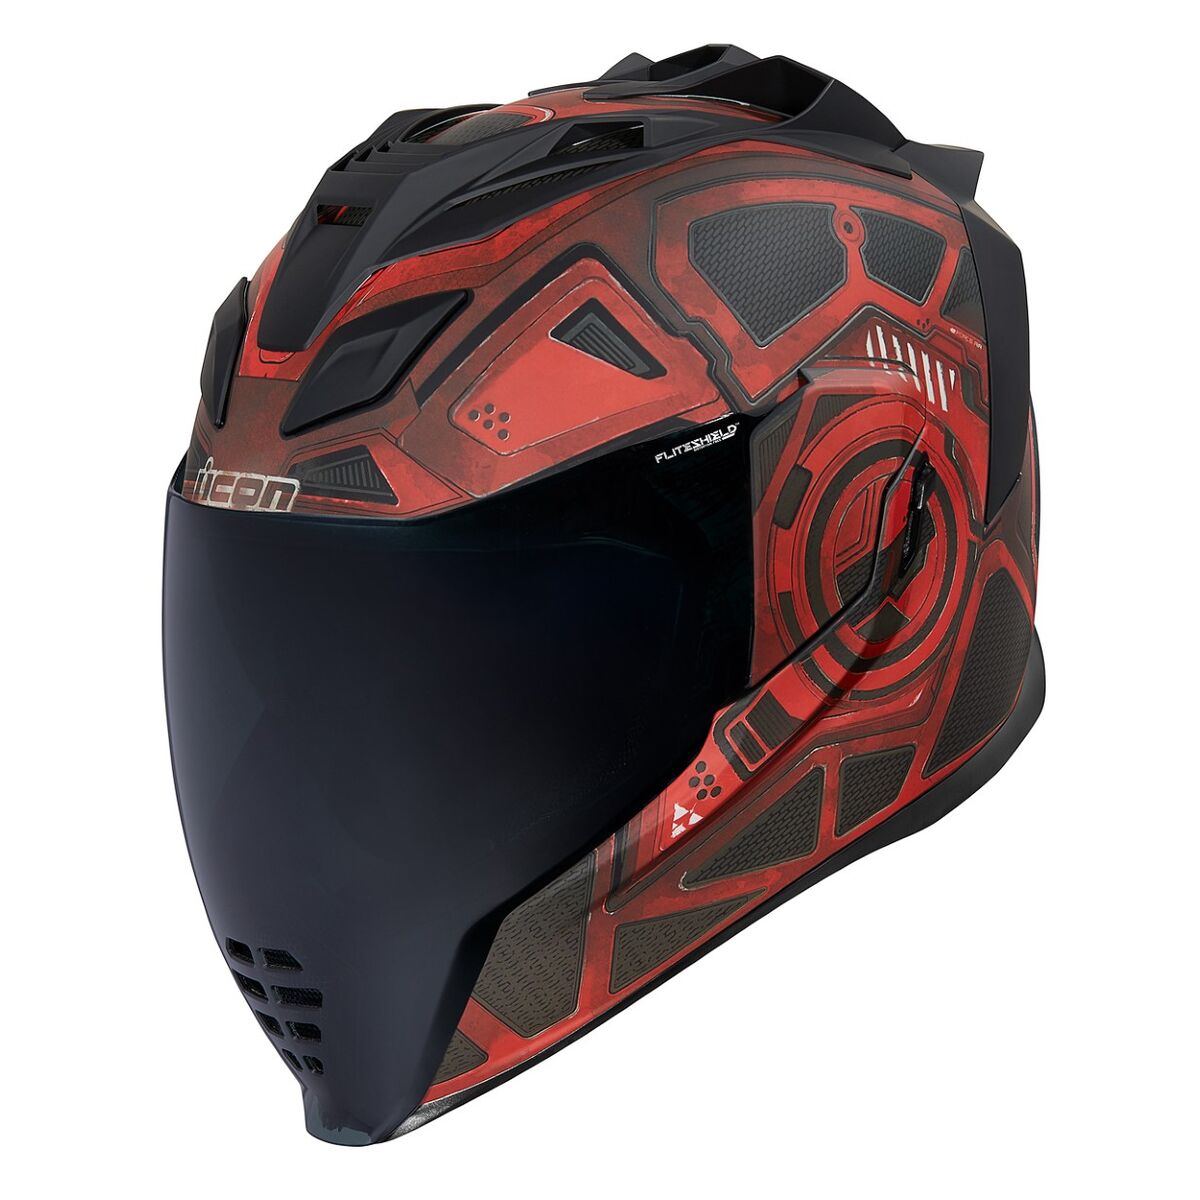 ICON Motorcycle Airflite Blockchain Helmet